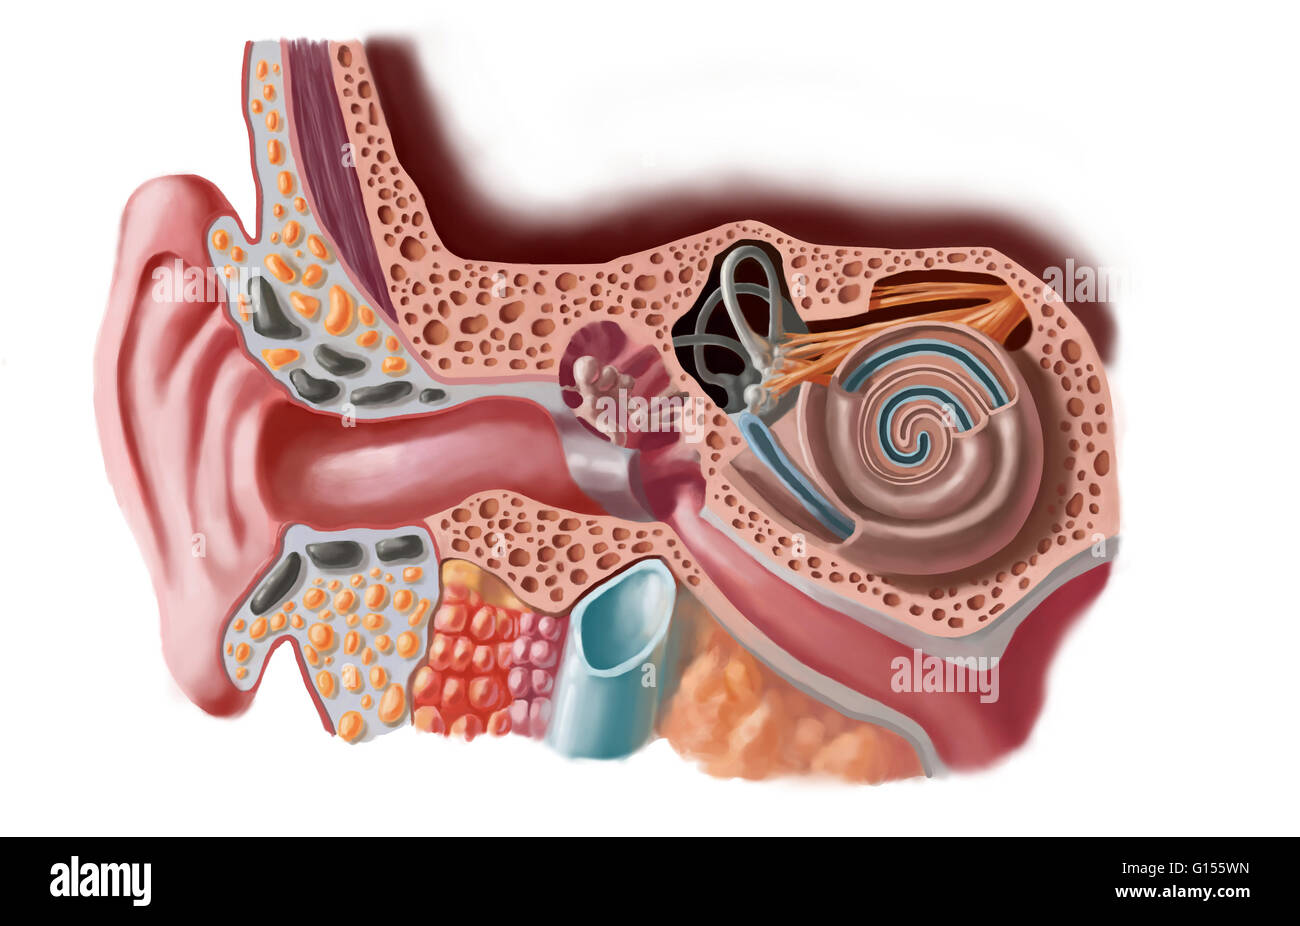 Schéma de l'oreille humaine. L'oreille interne permet l'analyse des sons et  leur transmission au cerveau par le nerf auditif. Il comprend le vestibule,  les canaux semi-circulaires et de la cochlée. Il est